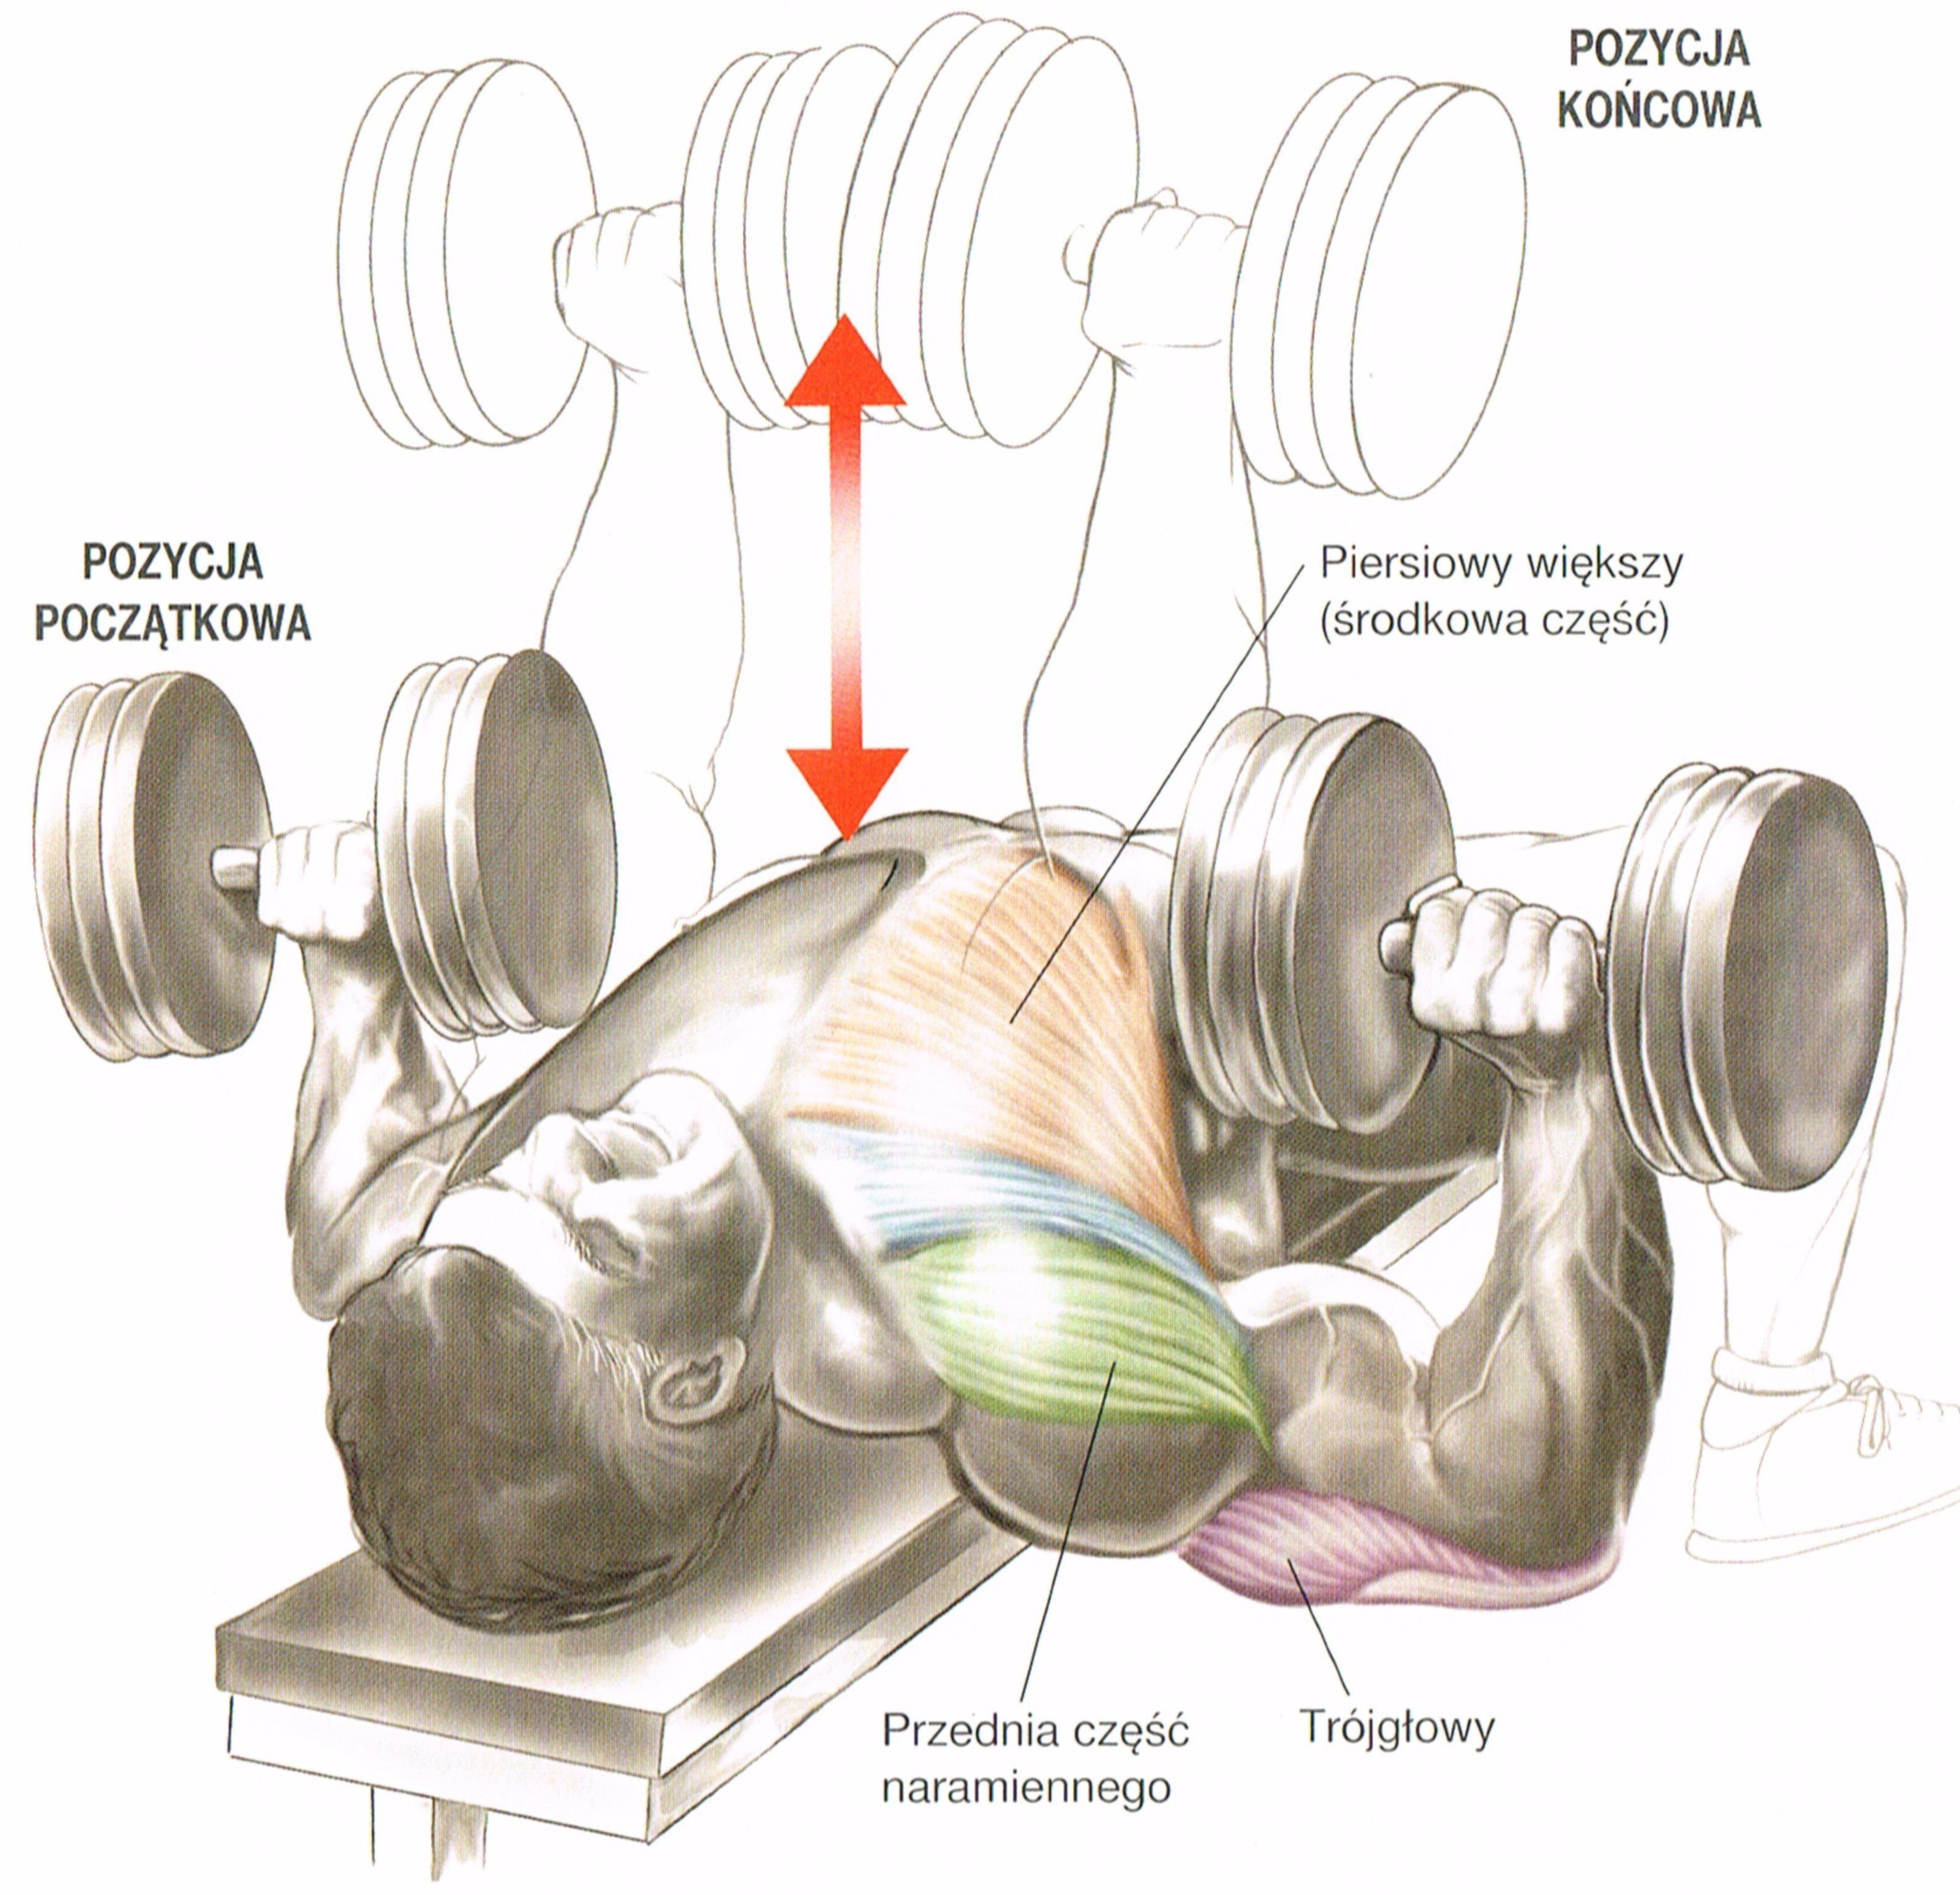 Работа с гантелями. Жим гантелей лежа анатомия. Гантели упражнения на грудные мышцы. Тренировка на грудь с гантелями. Как прокачать грудные мышцы гантелями.